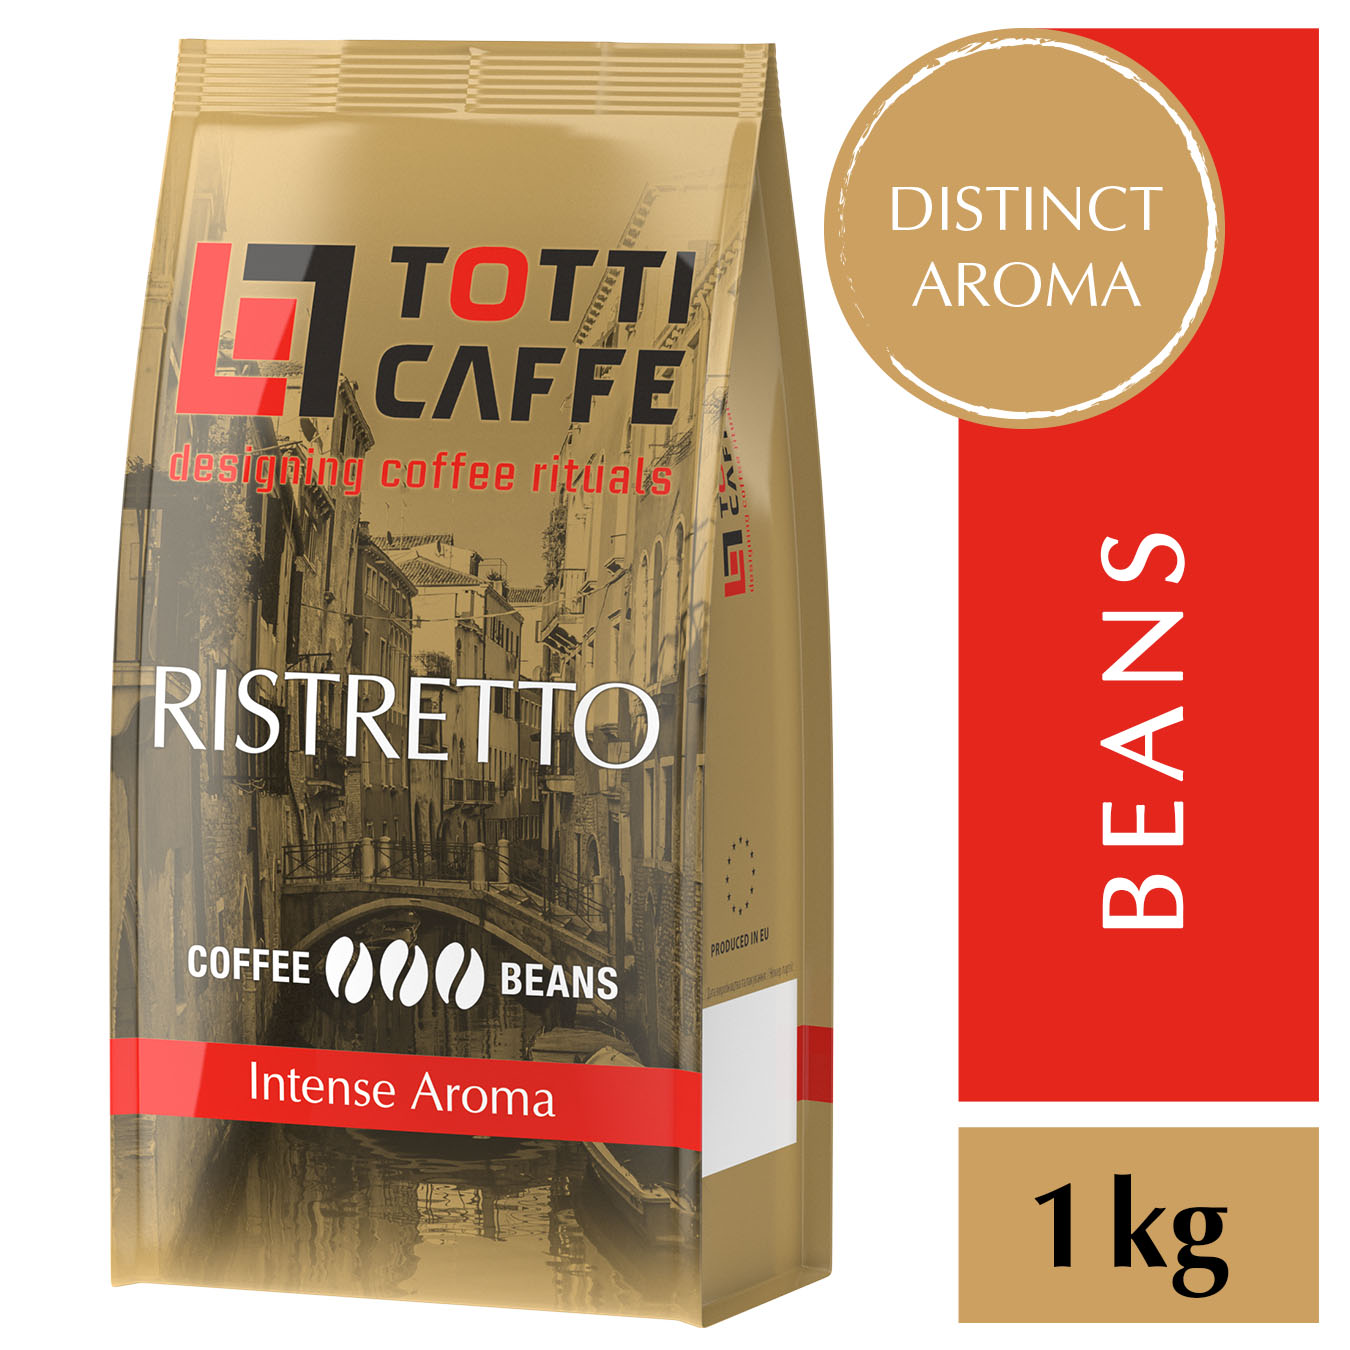 Coffee Beans TOTTI CAFFE Ristretto